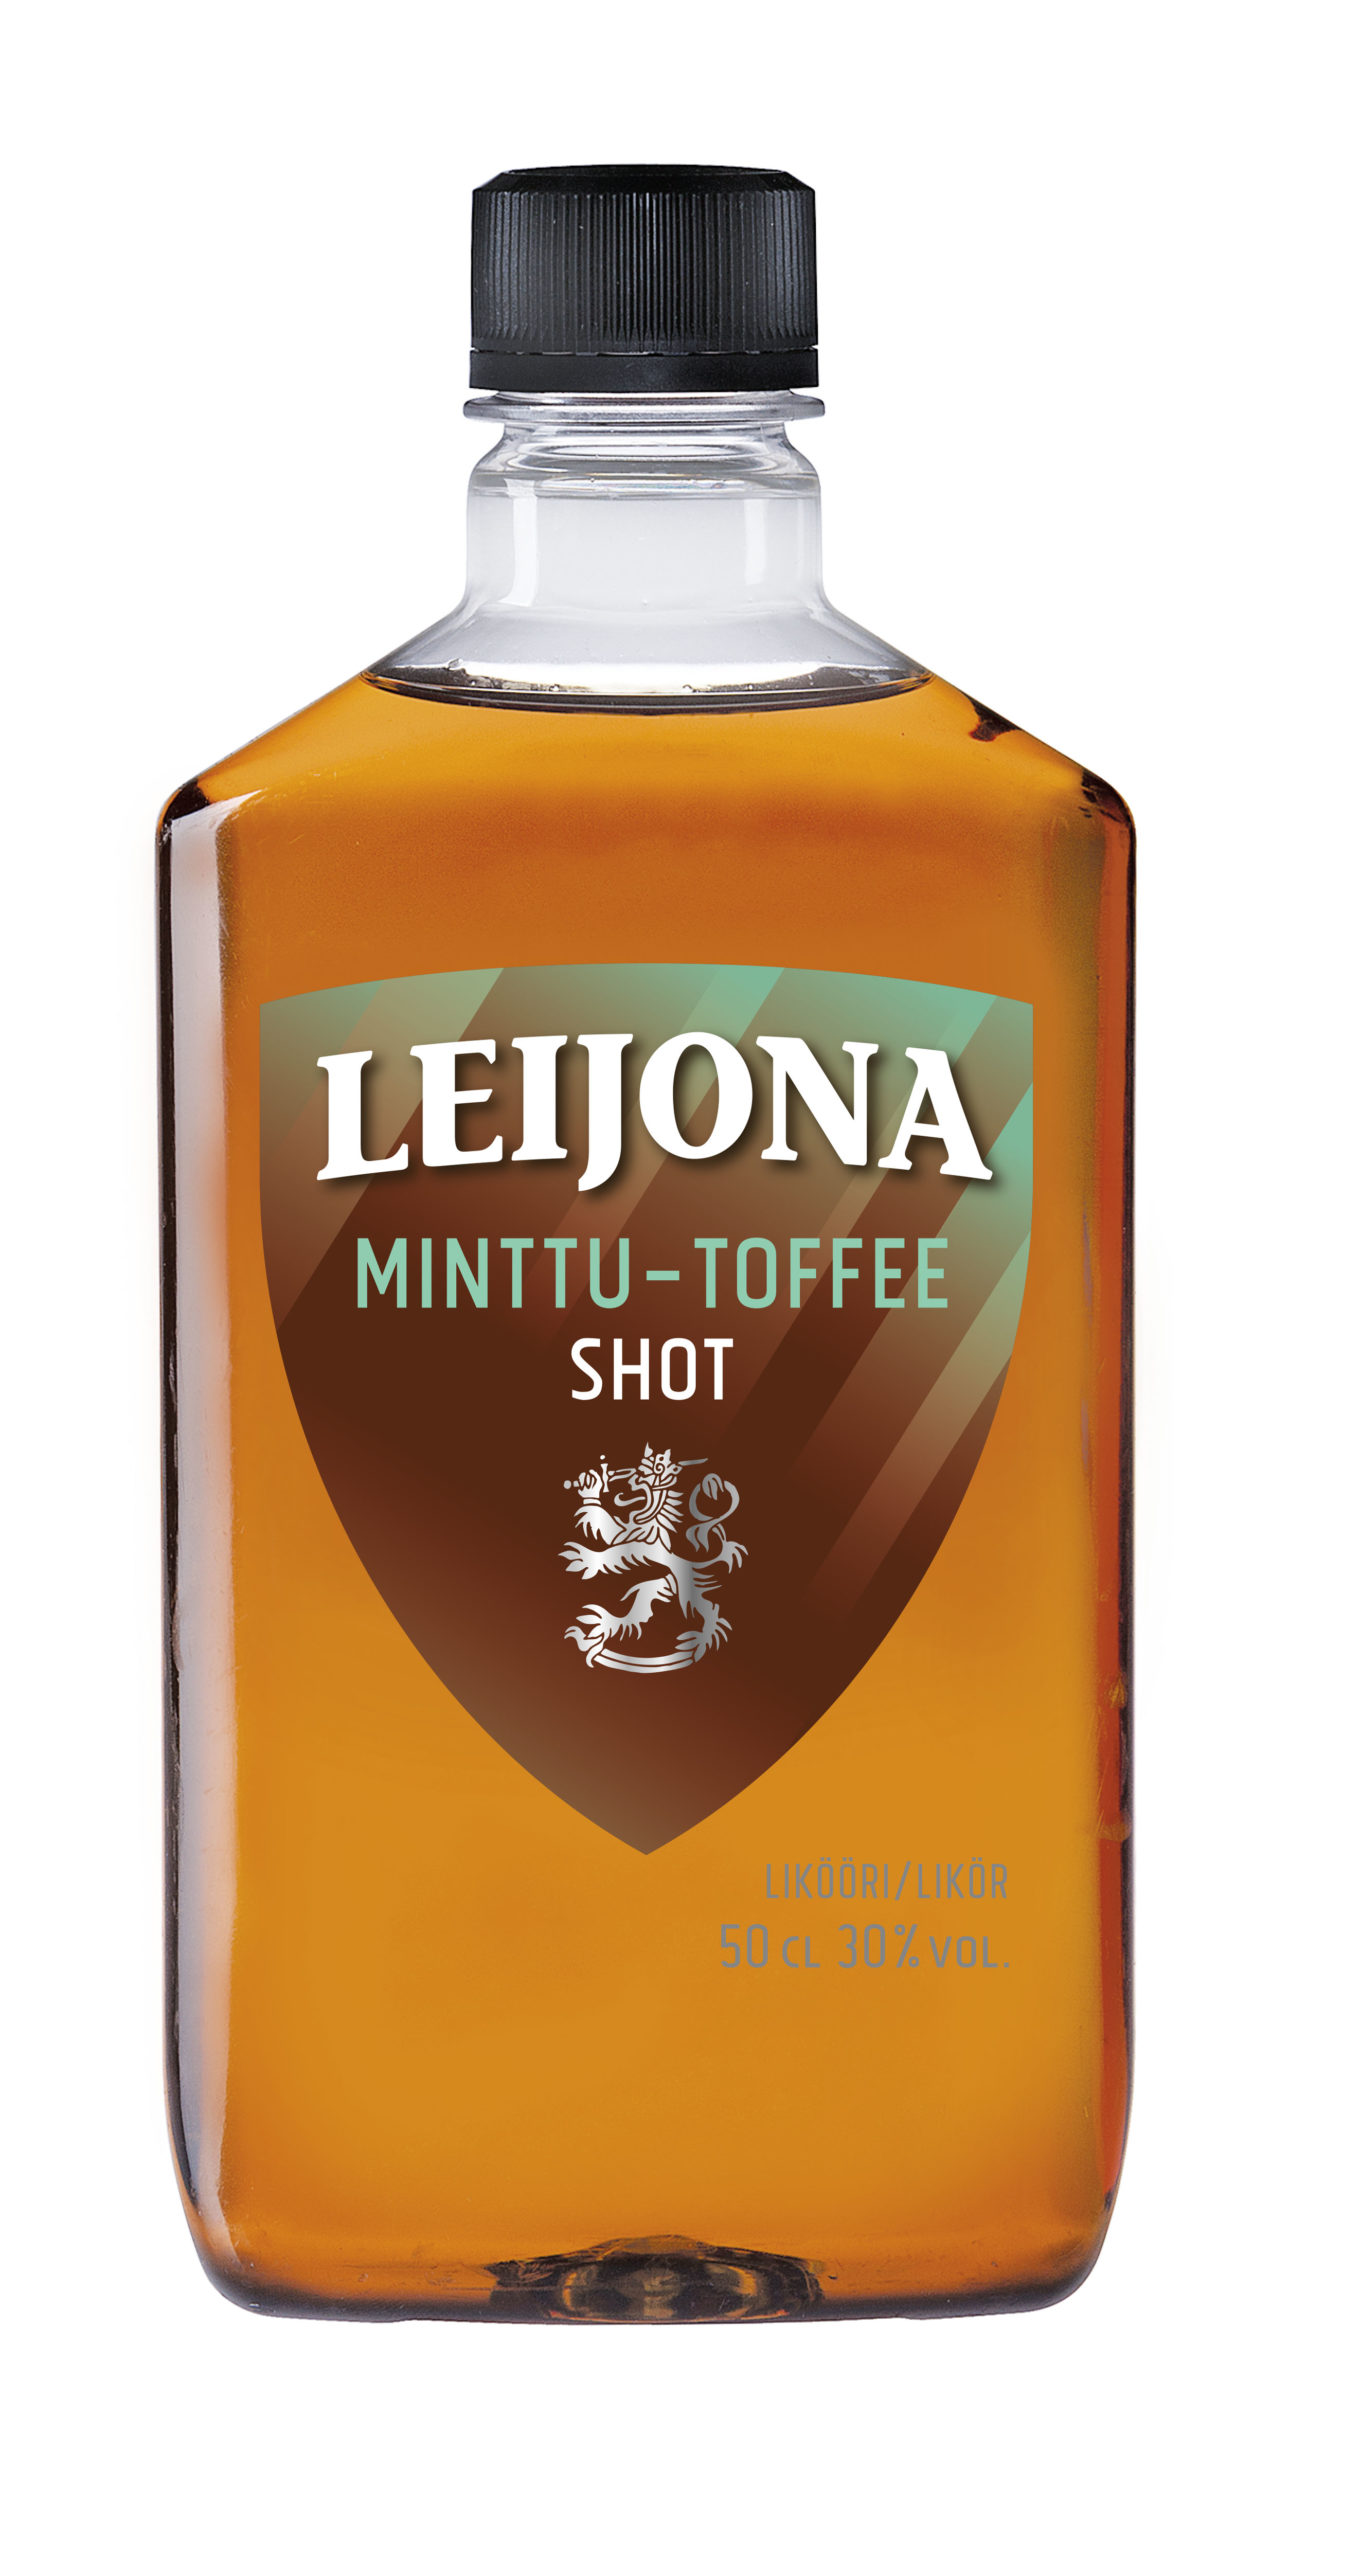 Leijona Minttu-Toffee Shot plastic bottle